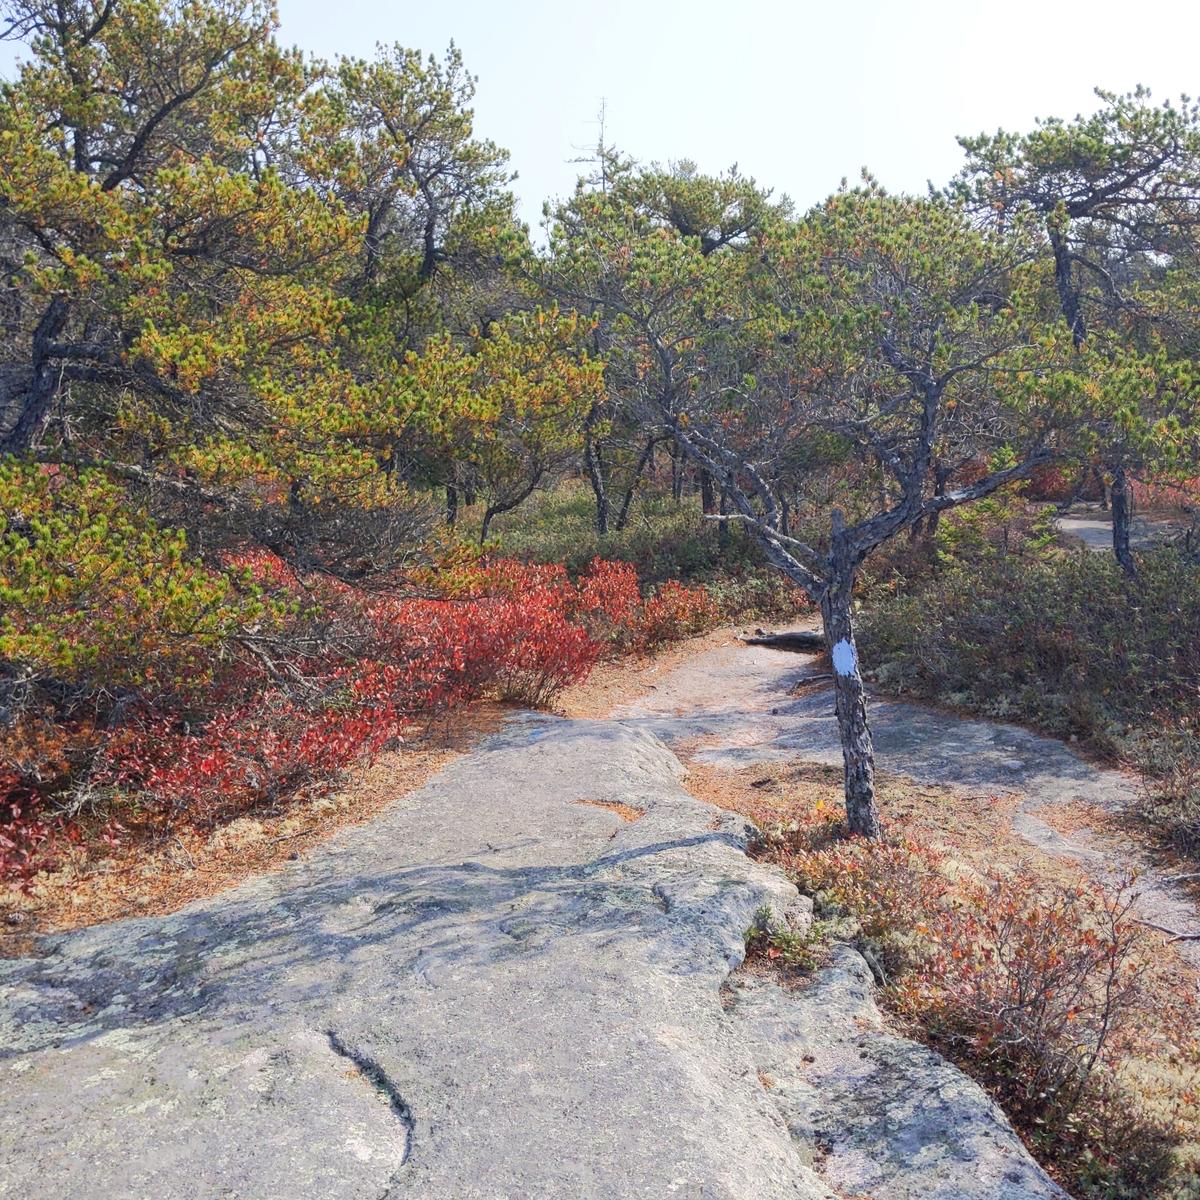 A trail on bedrock